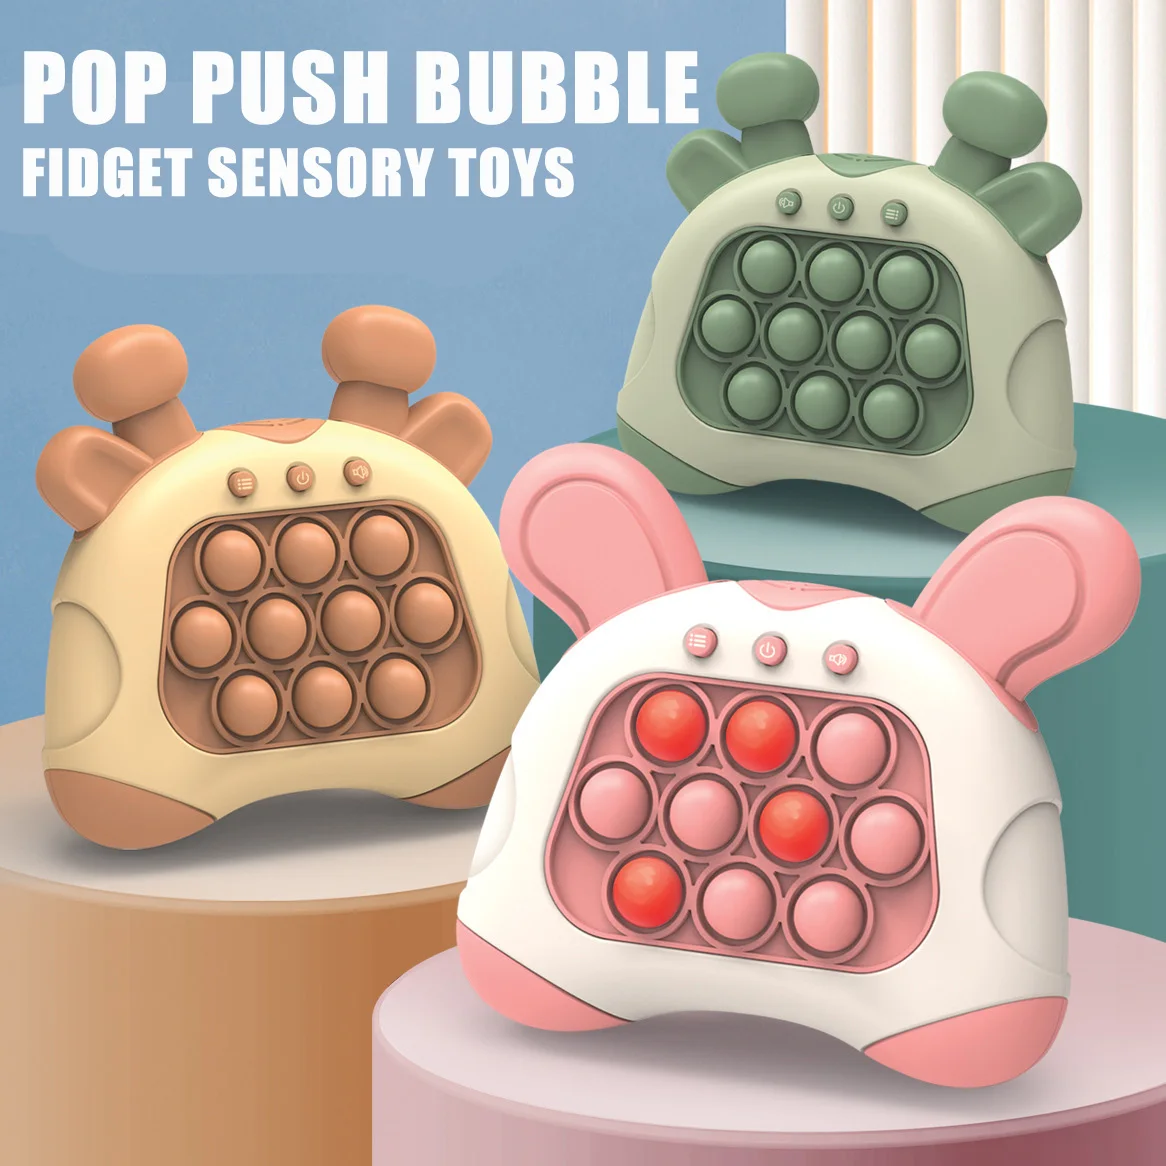 Pop-Push-Bubble-Fidget-Sensory-Toys-Whack-A-Mole-Music-Quick-souhaits-Bubble-Game-Machine-Squeeze.jpg_